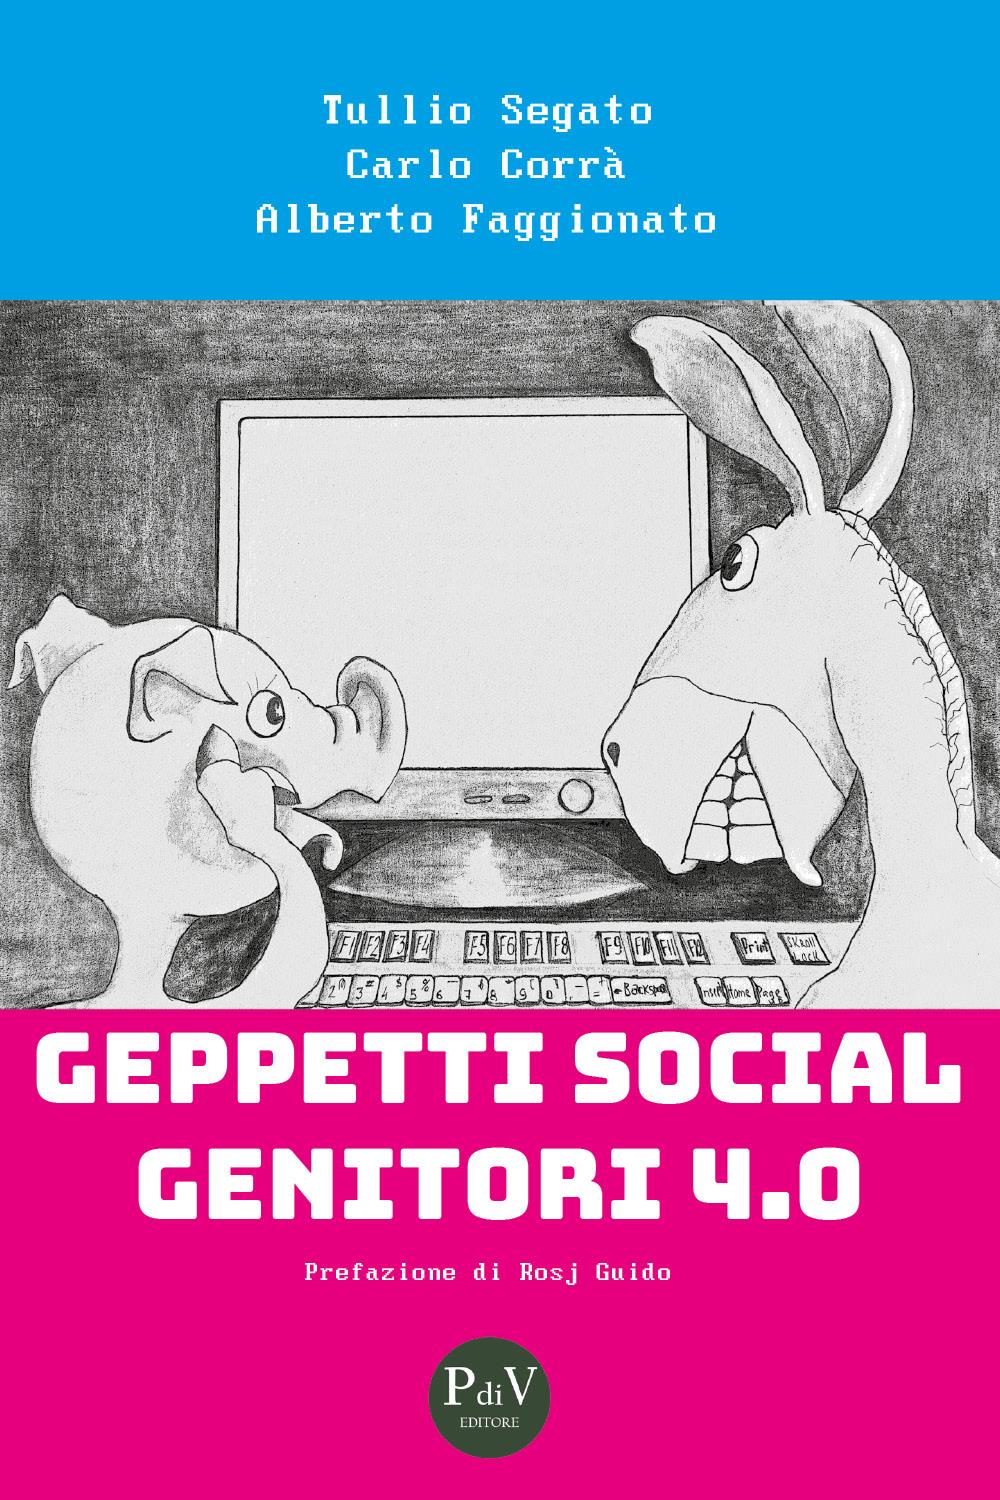 Geppetti Social Genitori 4.0